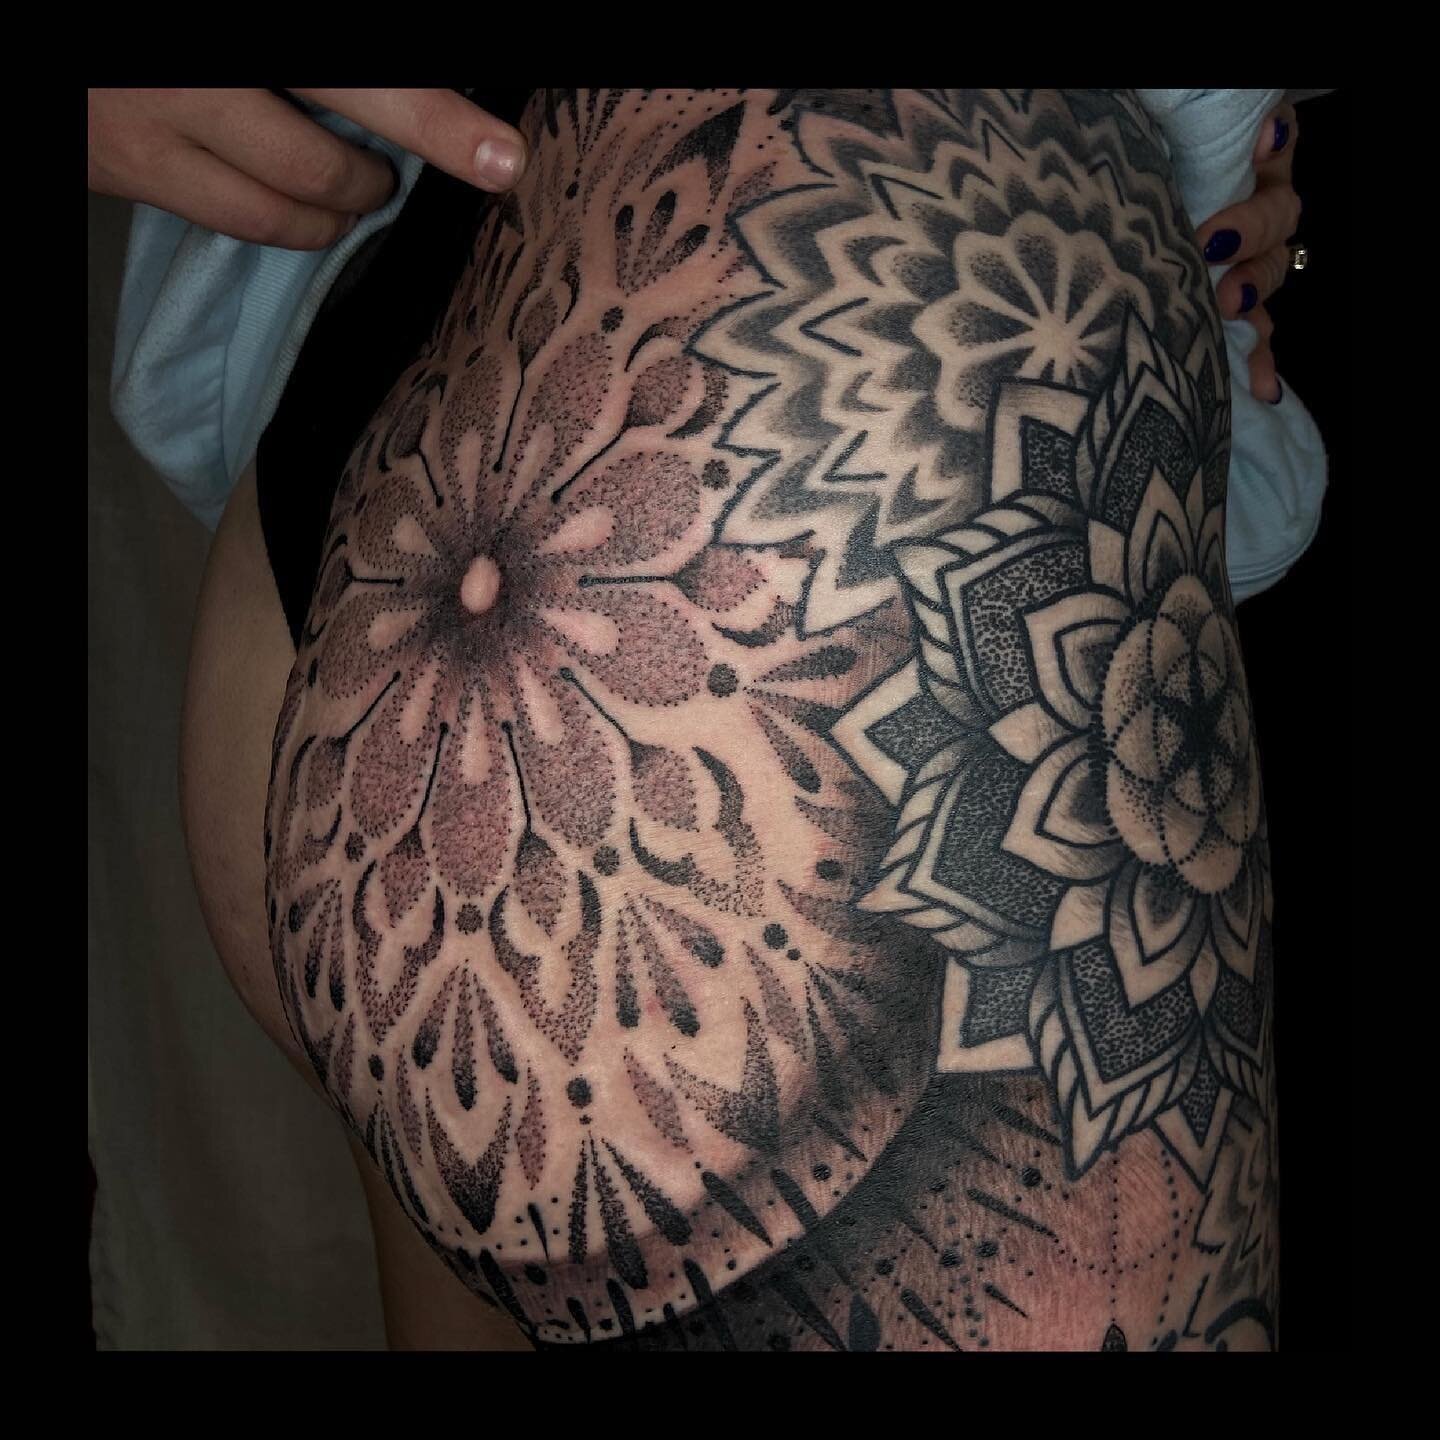 Artist: @dandunks_tattoo 
Shop: @intuitiontattoo 
Subject: Ornamental Side/Leg piece
.
.
.

#ornamentaltattoo #geometric #geometrictattoo #dotwork #blackandgreytattoo #suicidegirls  #tattoo #tattoos #girlswithtattoos #guyswithtattoos #inked #cttattoo